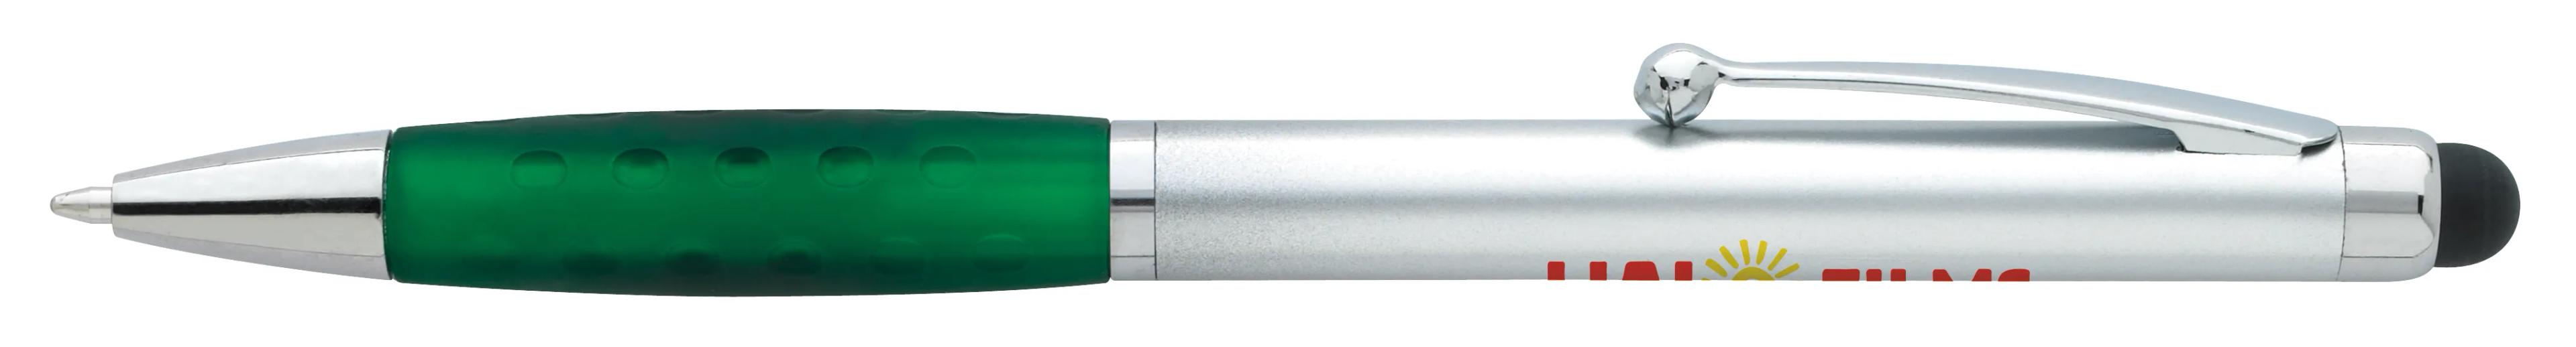 Silver Stylus Grip Pen